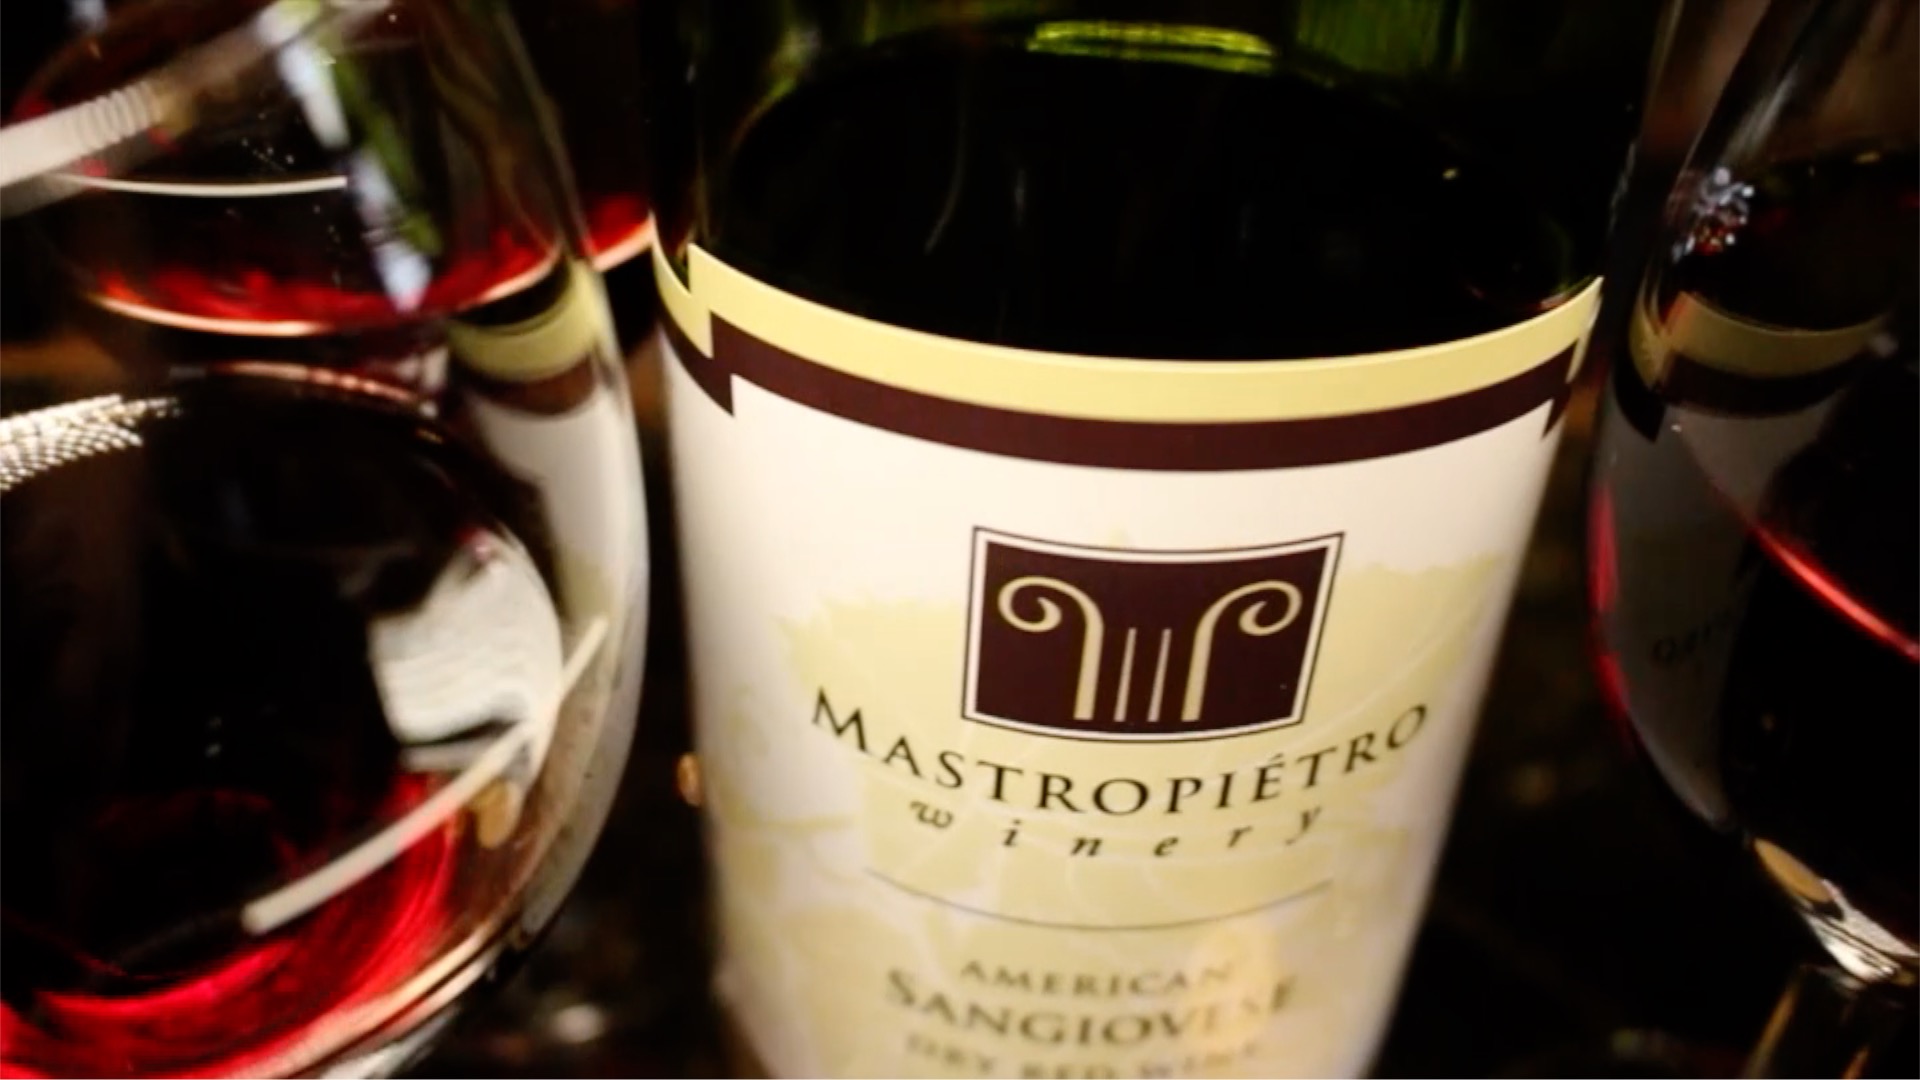 mastropietro winery